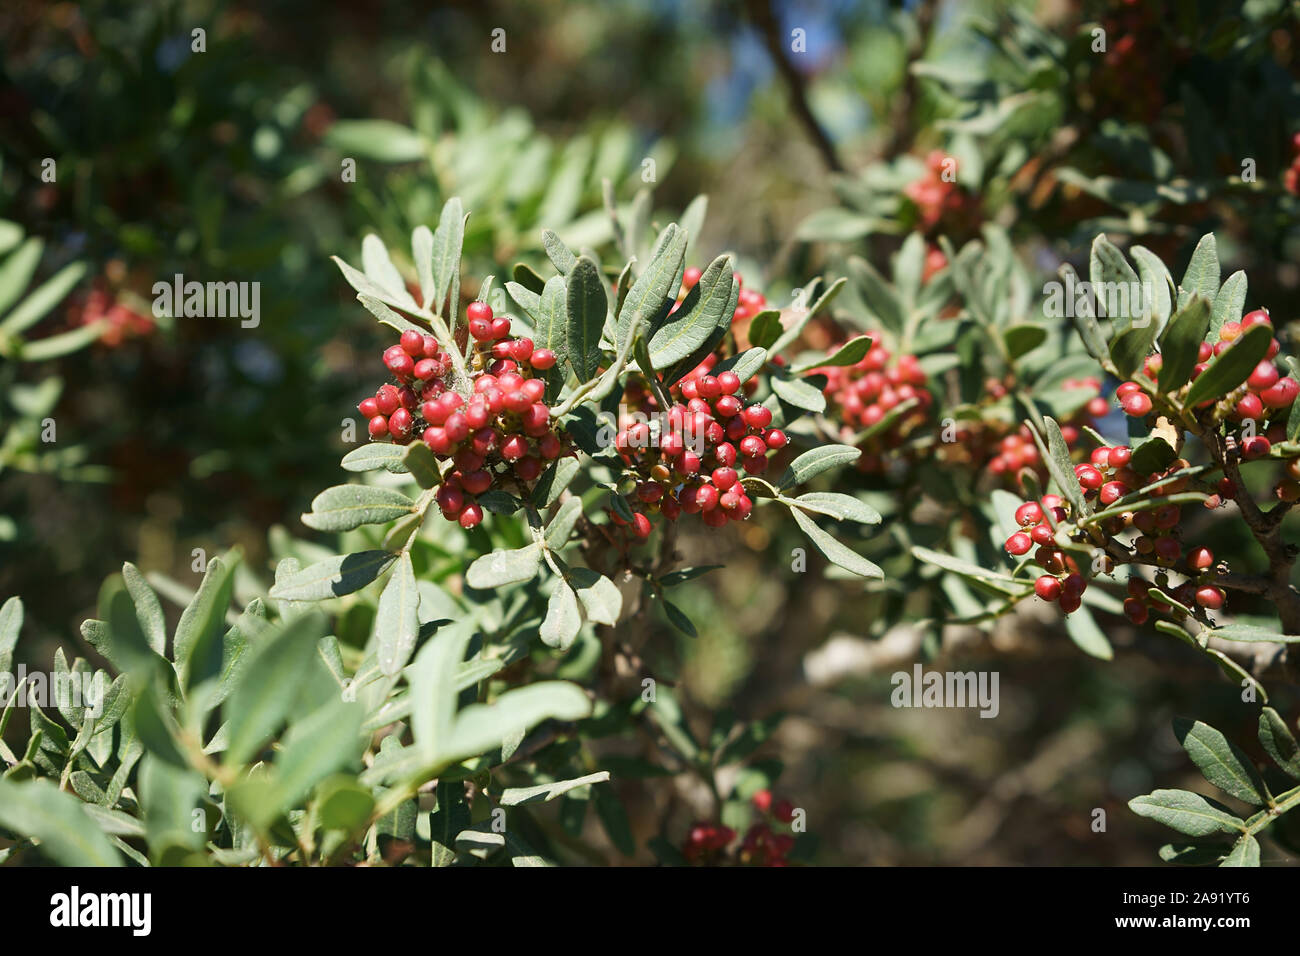 Bacche della pianta di Lentisco, Red berries of a mastic tree in Sardinia, Italy - Pistacia lentiscus close up Stock Photo